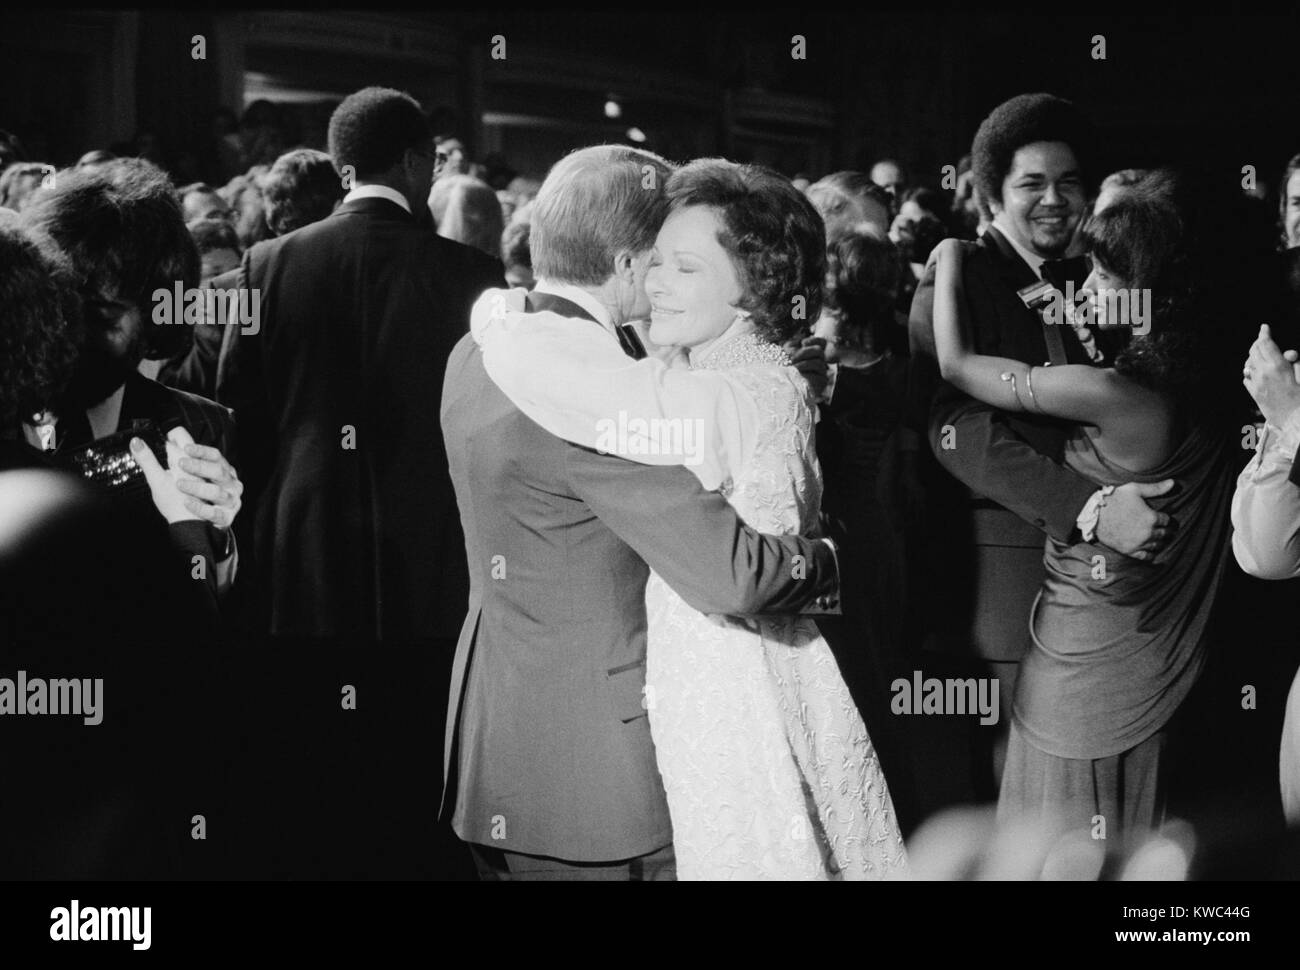 Präsident Jimmy Carter und der First Lady Rosalynn Carter Tanz in eine konstituierende Ball. Jan. 20, 1977. (BSLOC 2015 14 70) Stockfoto